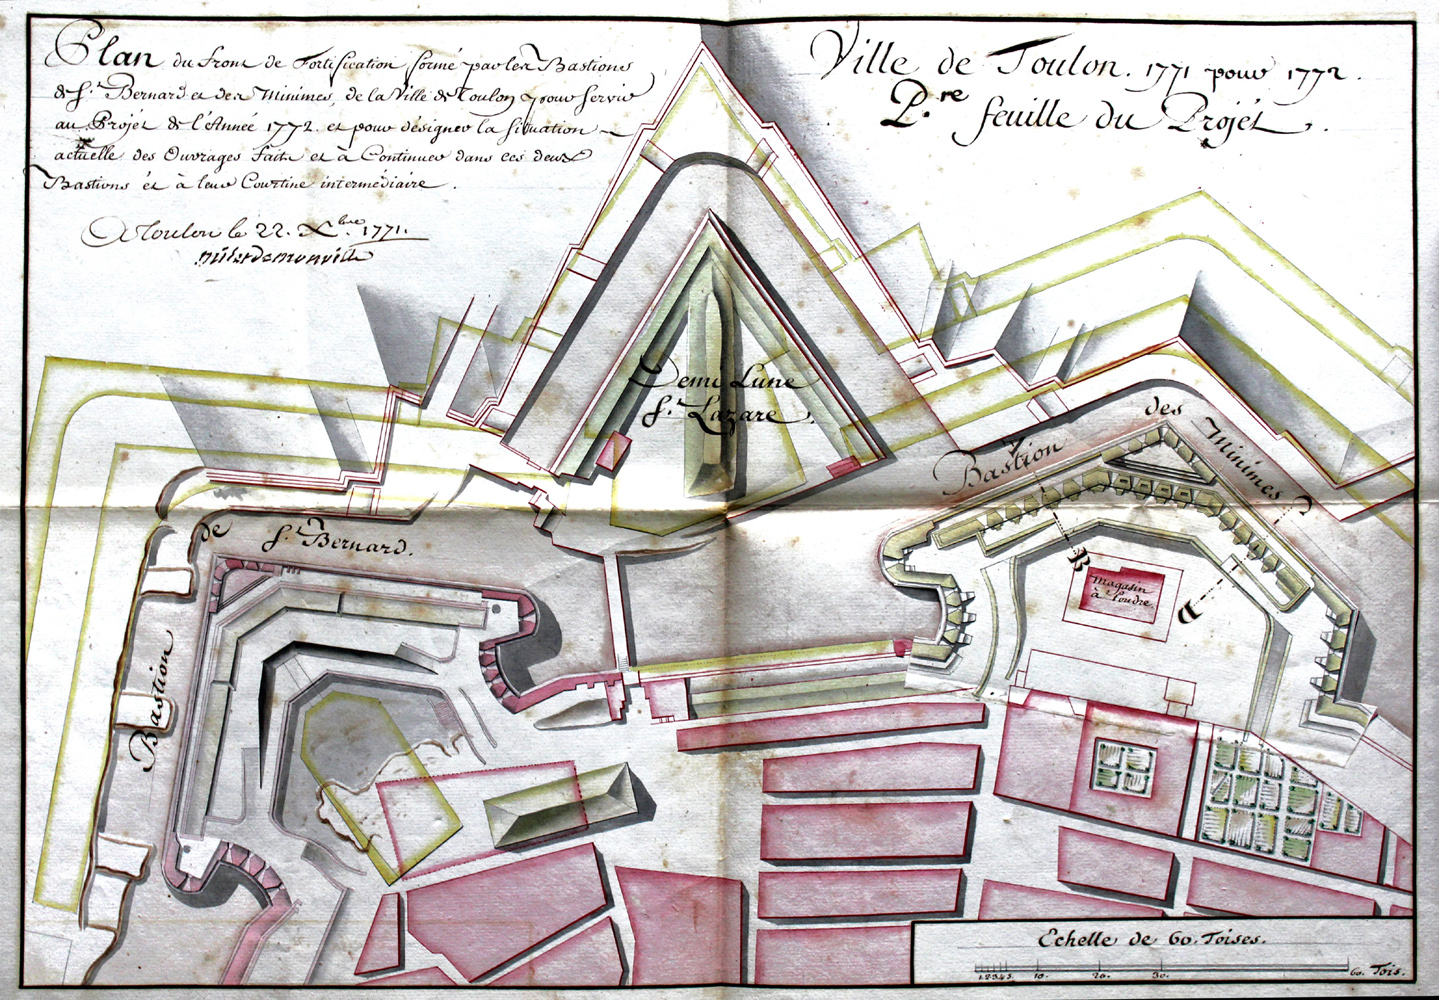 Plan du front de fortifications formé par les bastions de St-Bernard et des Minimes... 1771.